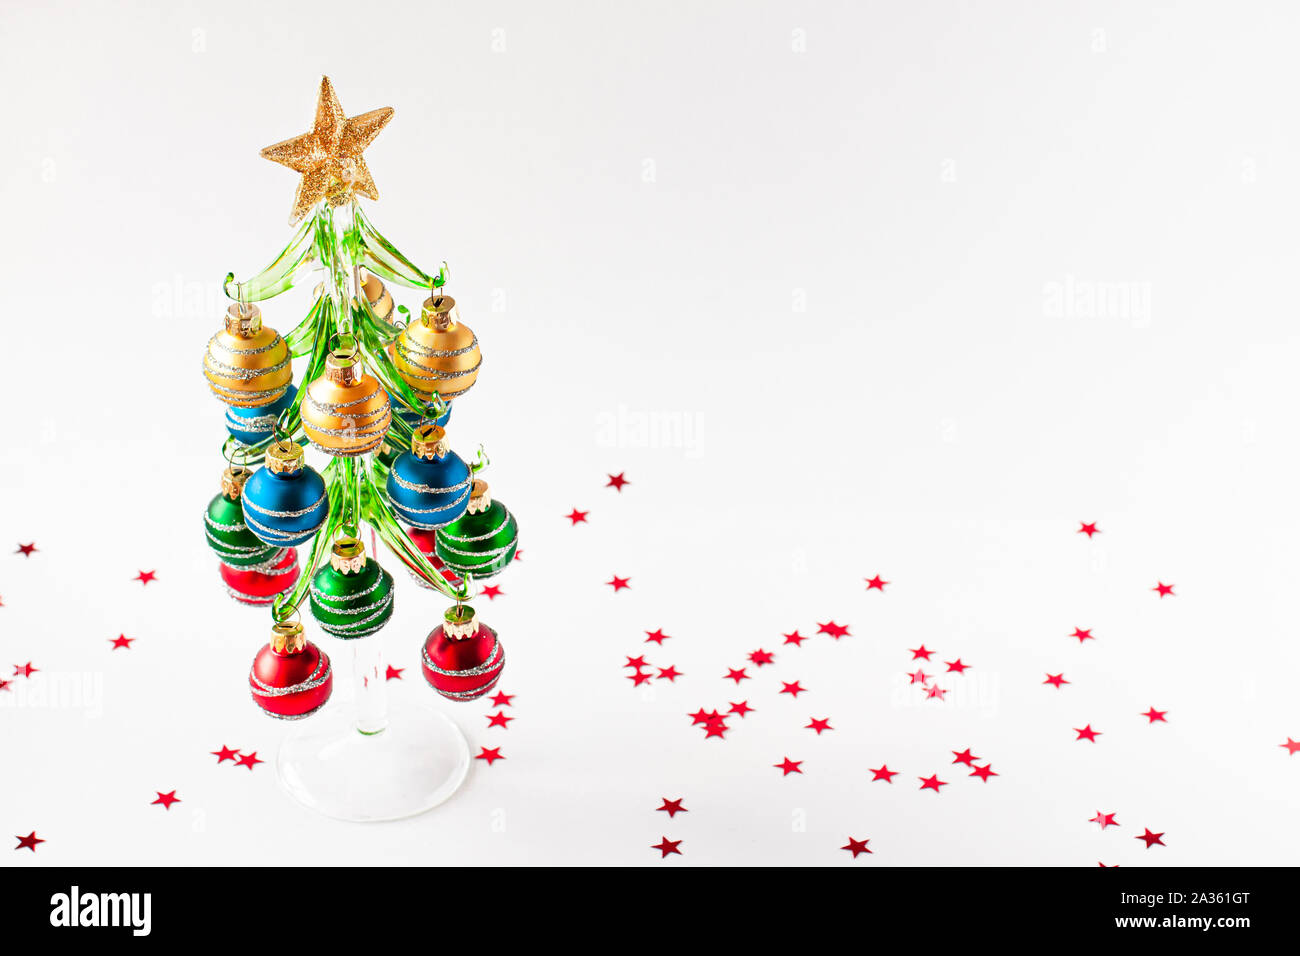 Concepto de Navidad. Rojo, verde, azul y oro bolas decorativas decorar el árbol de navidad con una estrella en la parte superior. Estrellas rojas alrededor del árbol de Navidad. Foto de stock